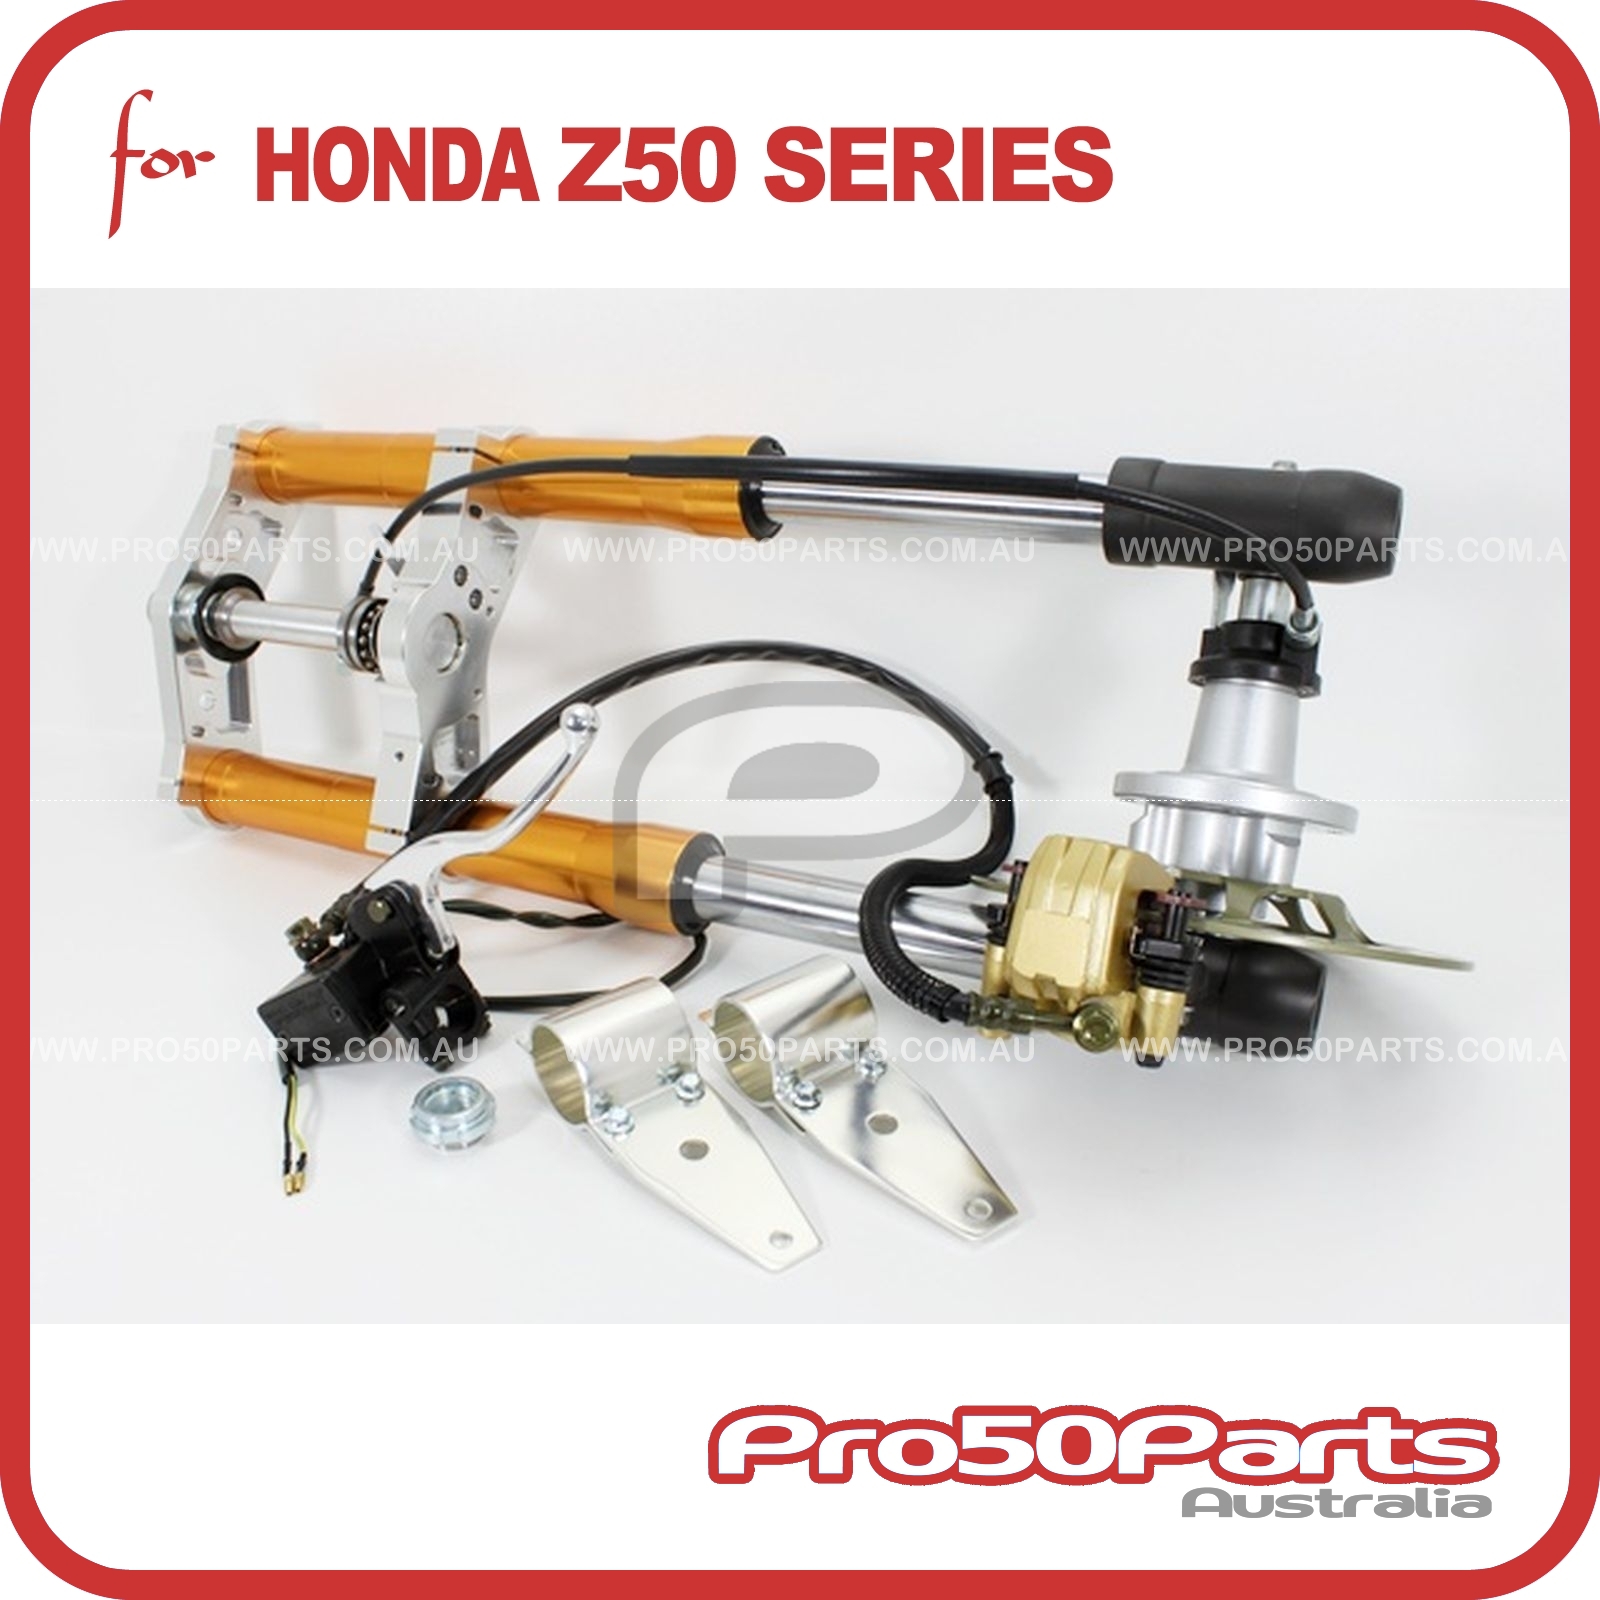 Aftermarket Honda Monkey Z50 Front Fork Upside Down Disk Brake setup